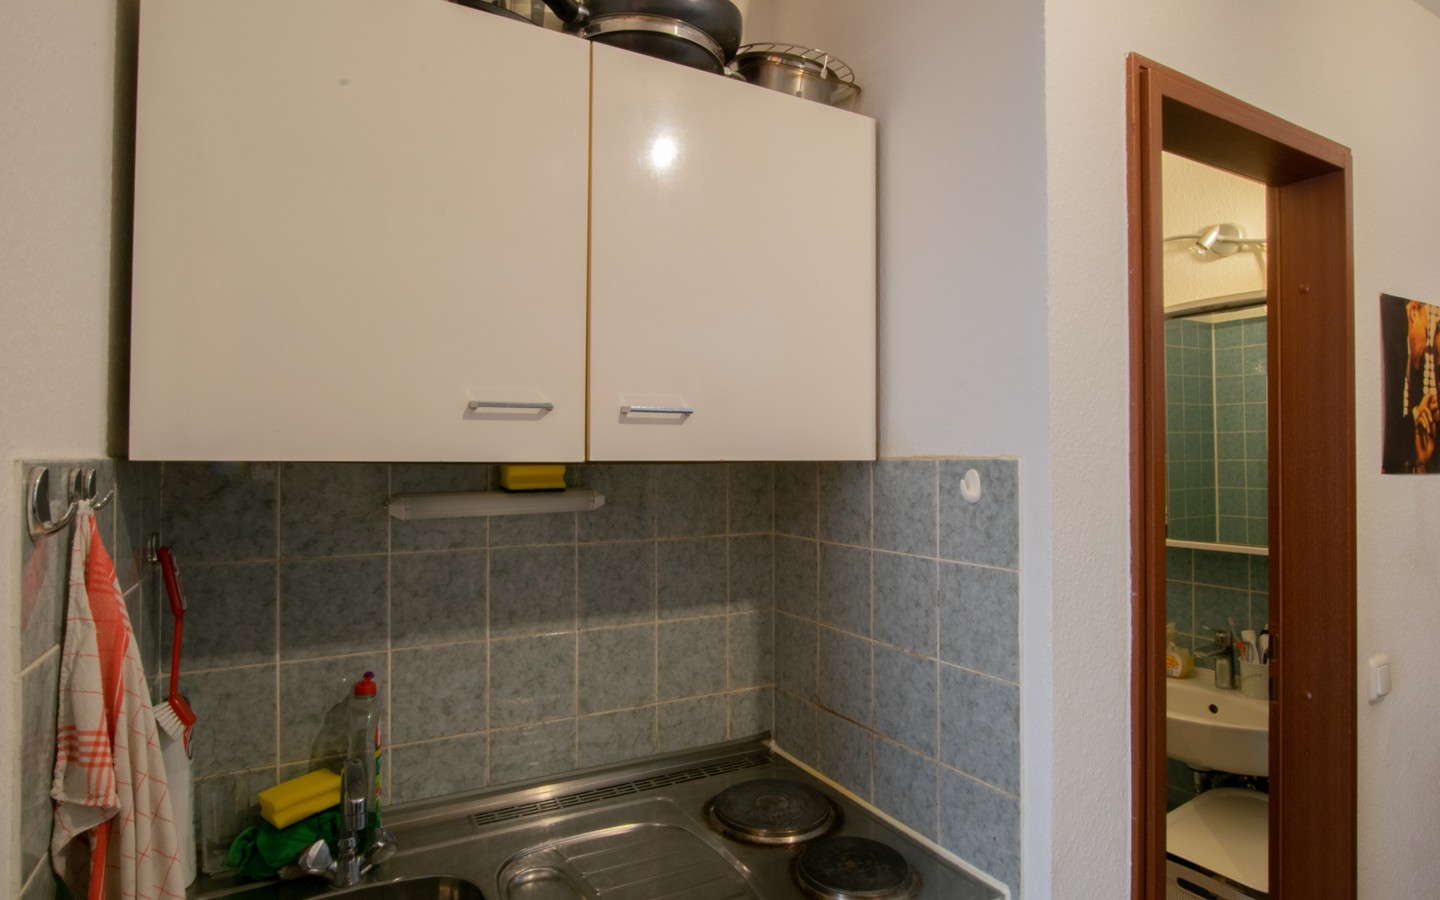 Küchenbereich - Handschuhsheim: Vermietete 1-Zimmer-Wohnung mit Loggia und TG-Stellplatz in attraktiver Lage